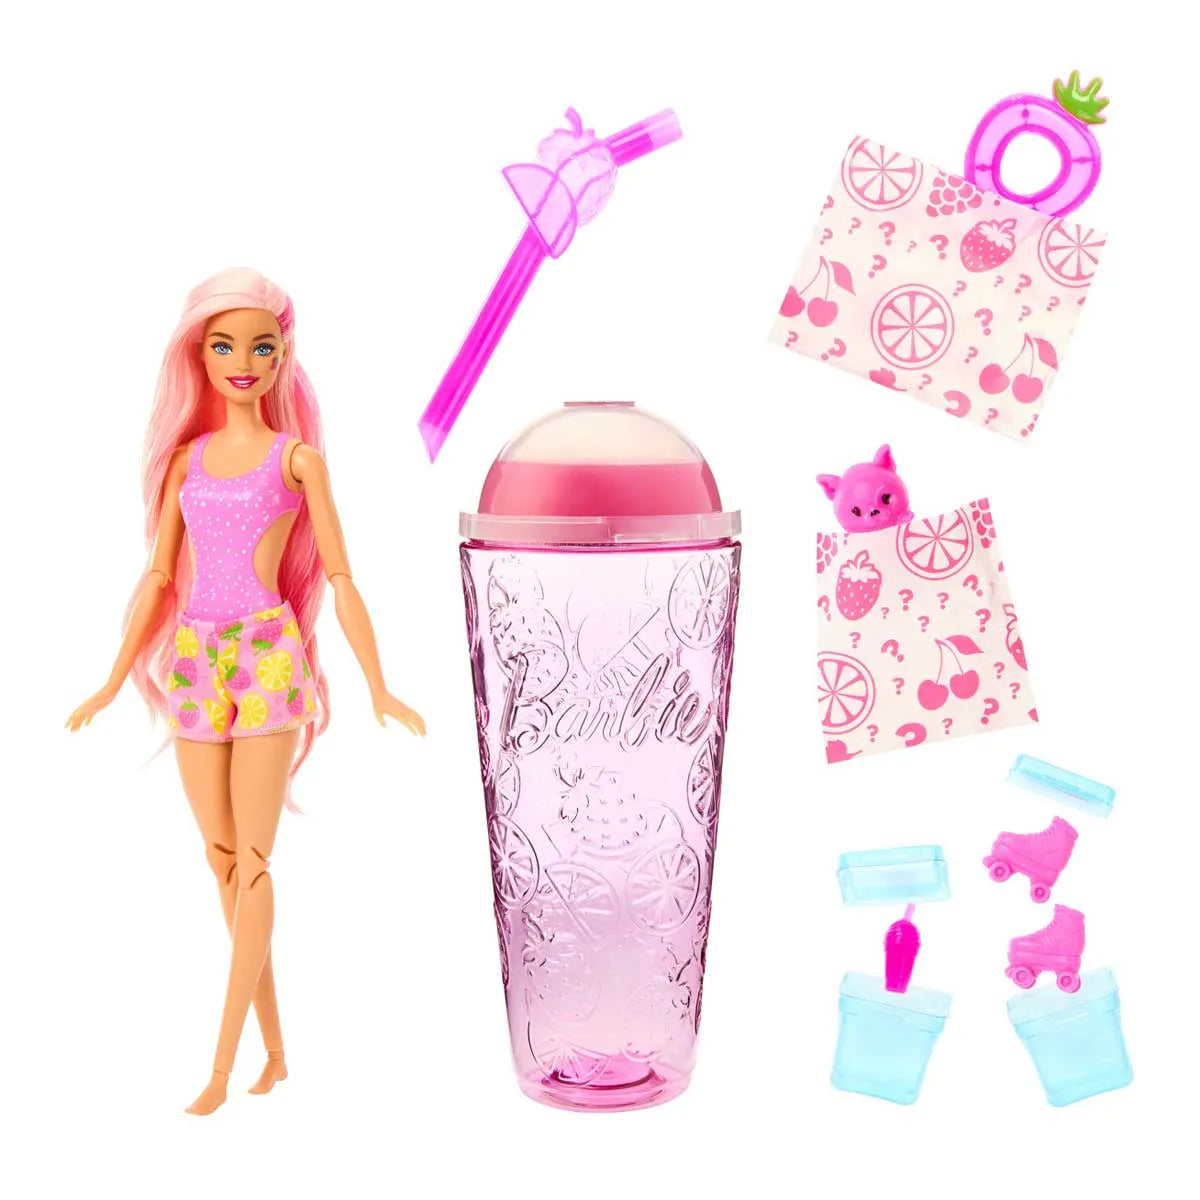 Barbie Sweet Fruit: Barbie Pop Reveal